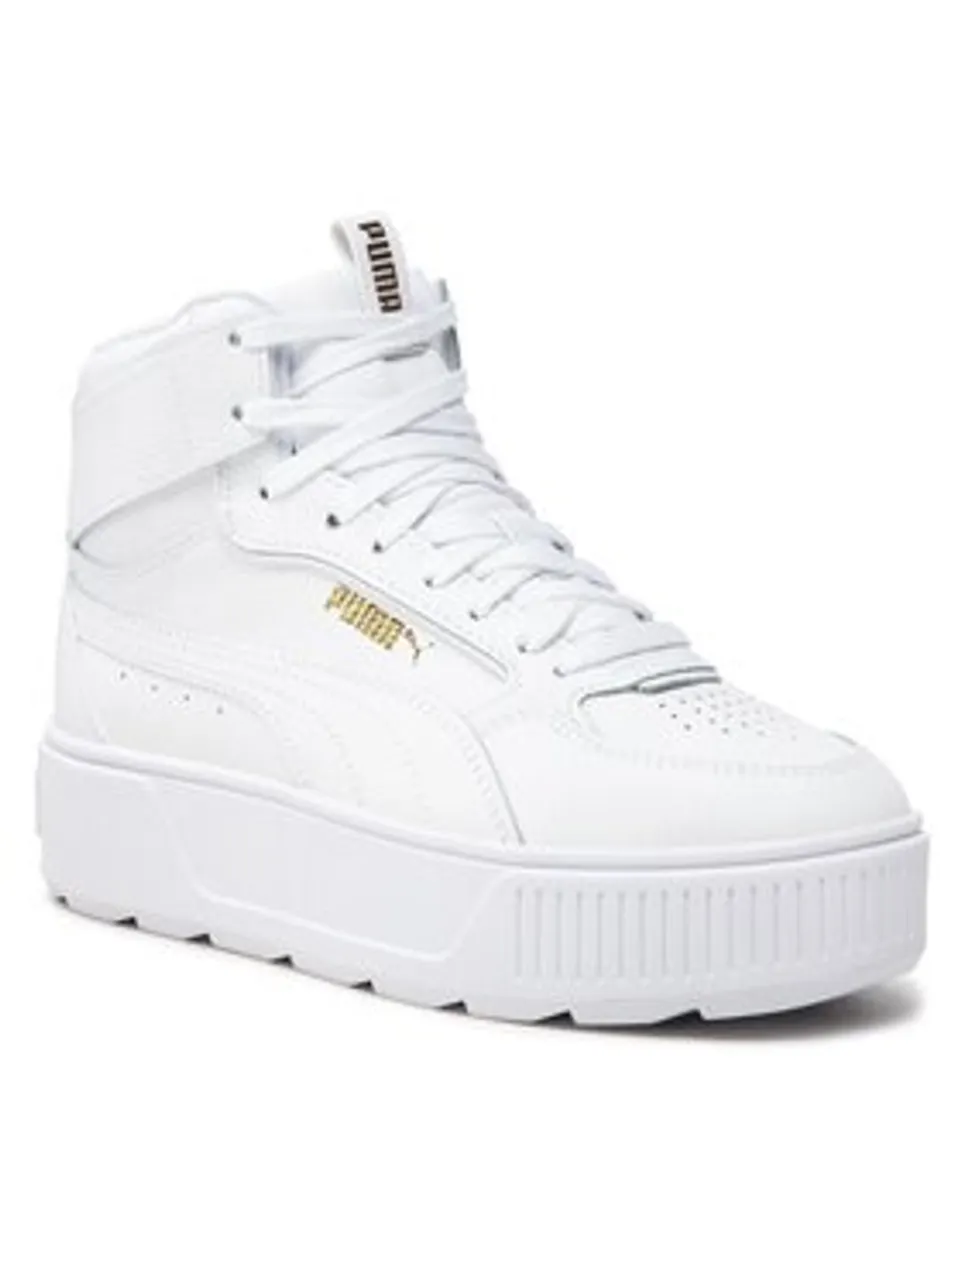 Puma Sneakers Karmen Rebelle Mid 387213 01 Weiß